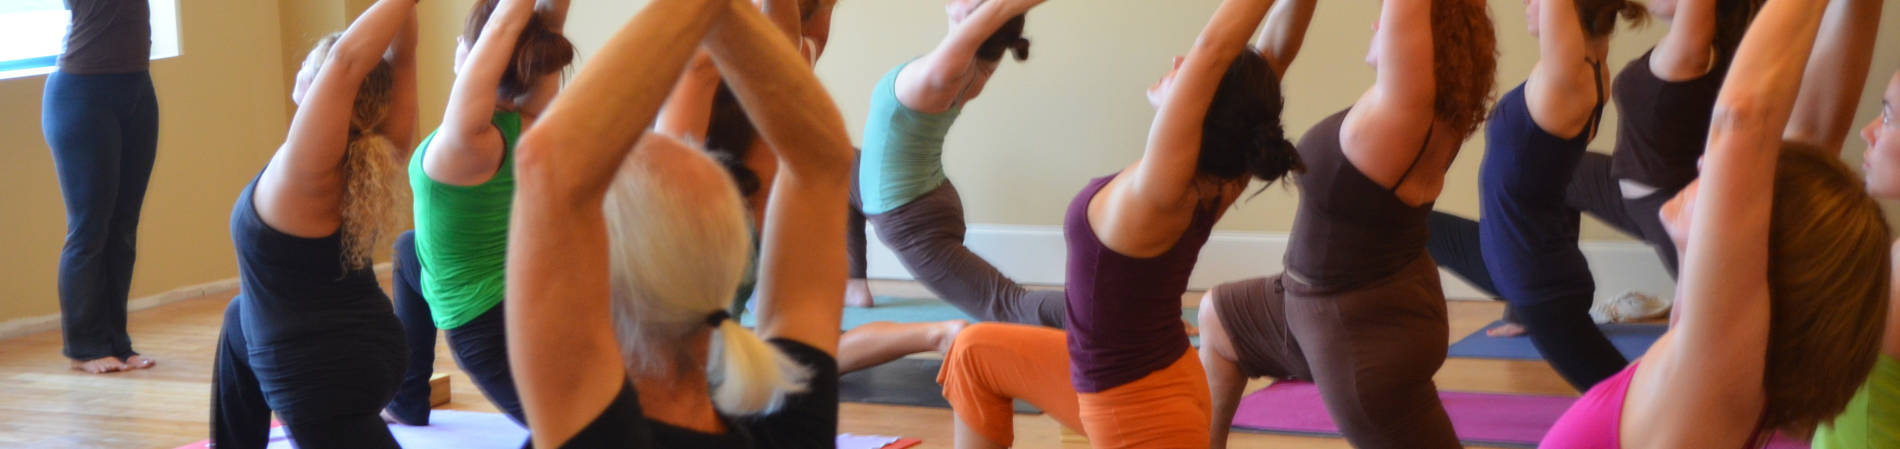 Clases de yoga a domicilio